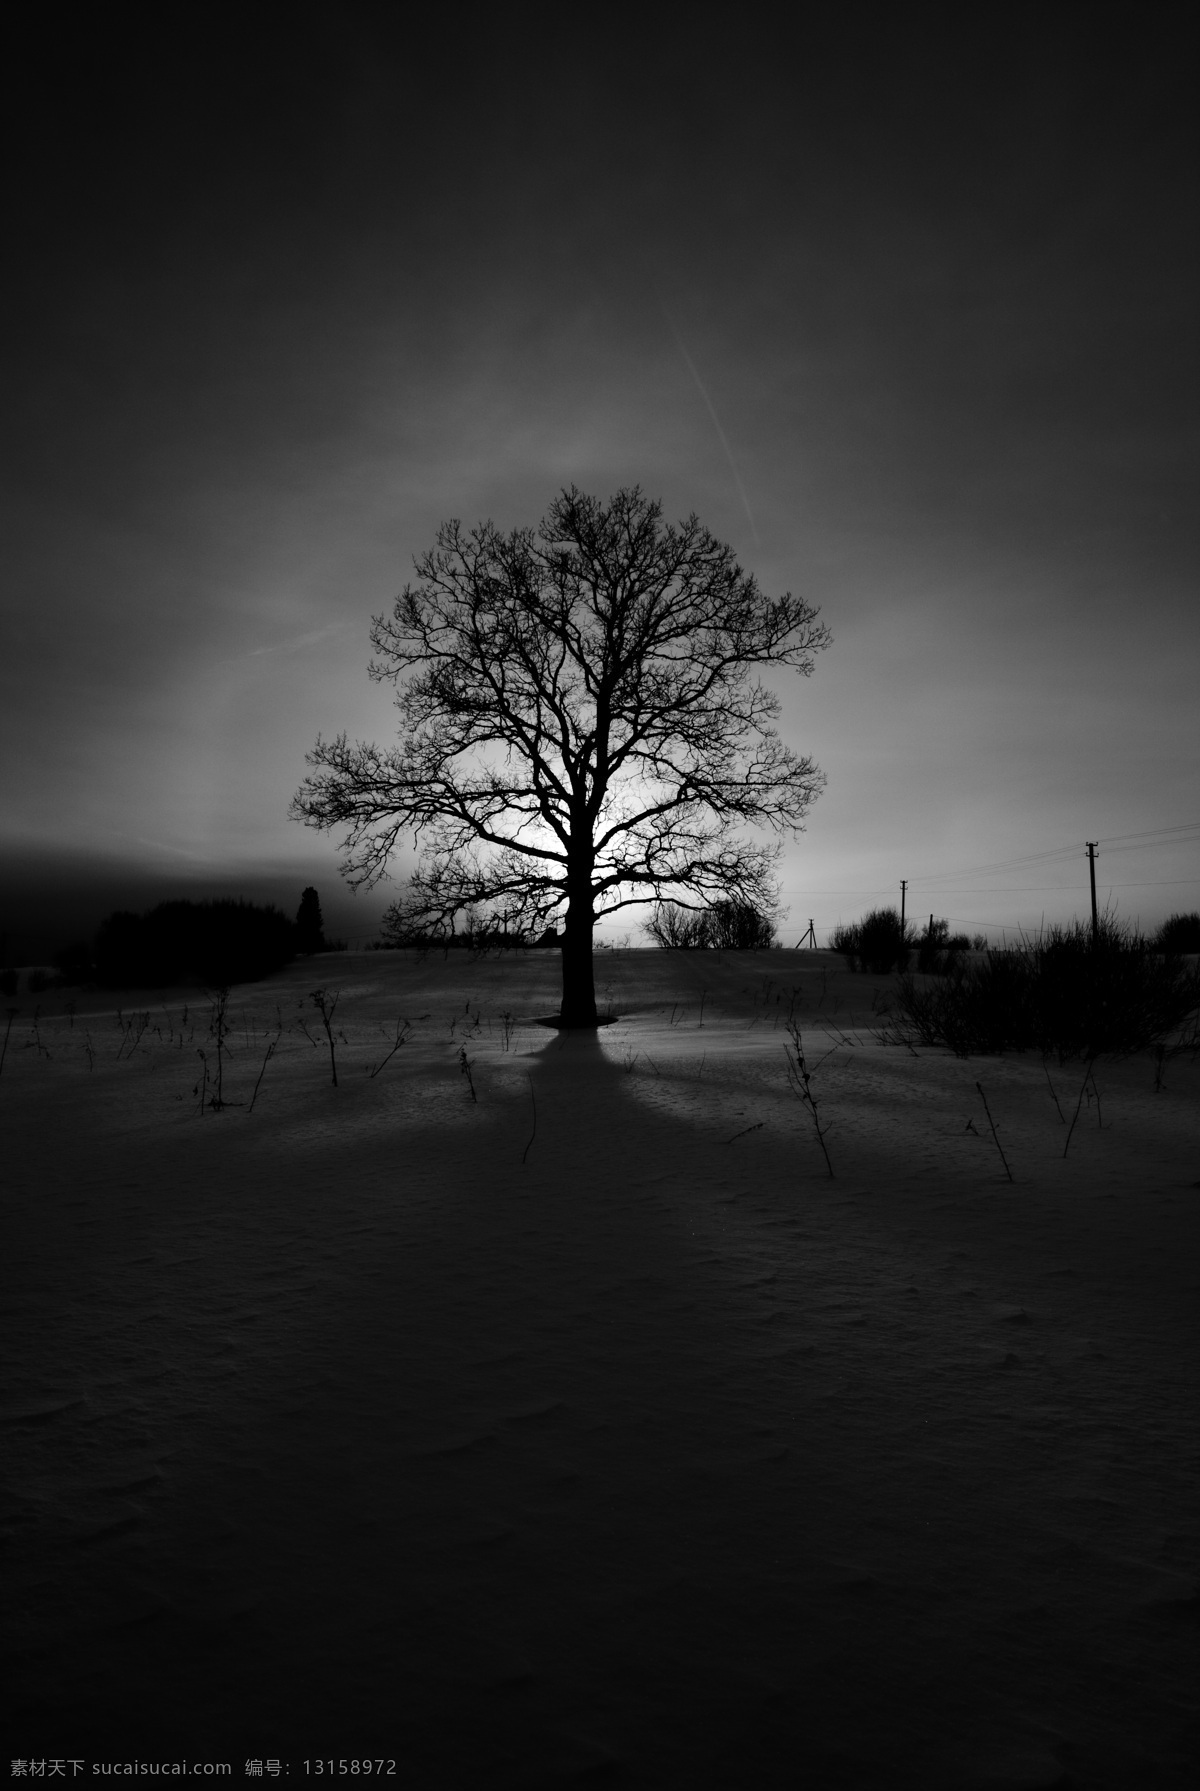 雪地 上 一棵树 夜晚 树 植物 山水风景 风景图片